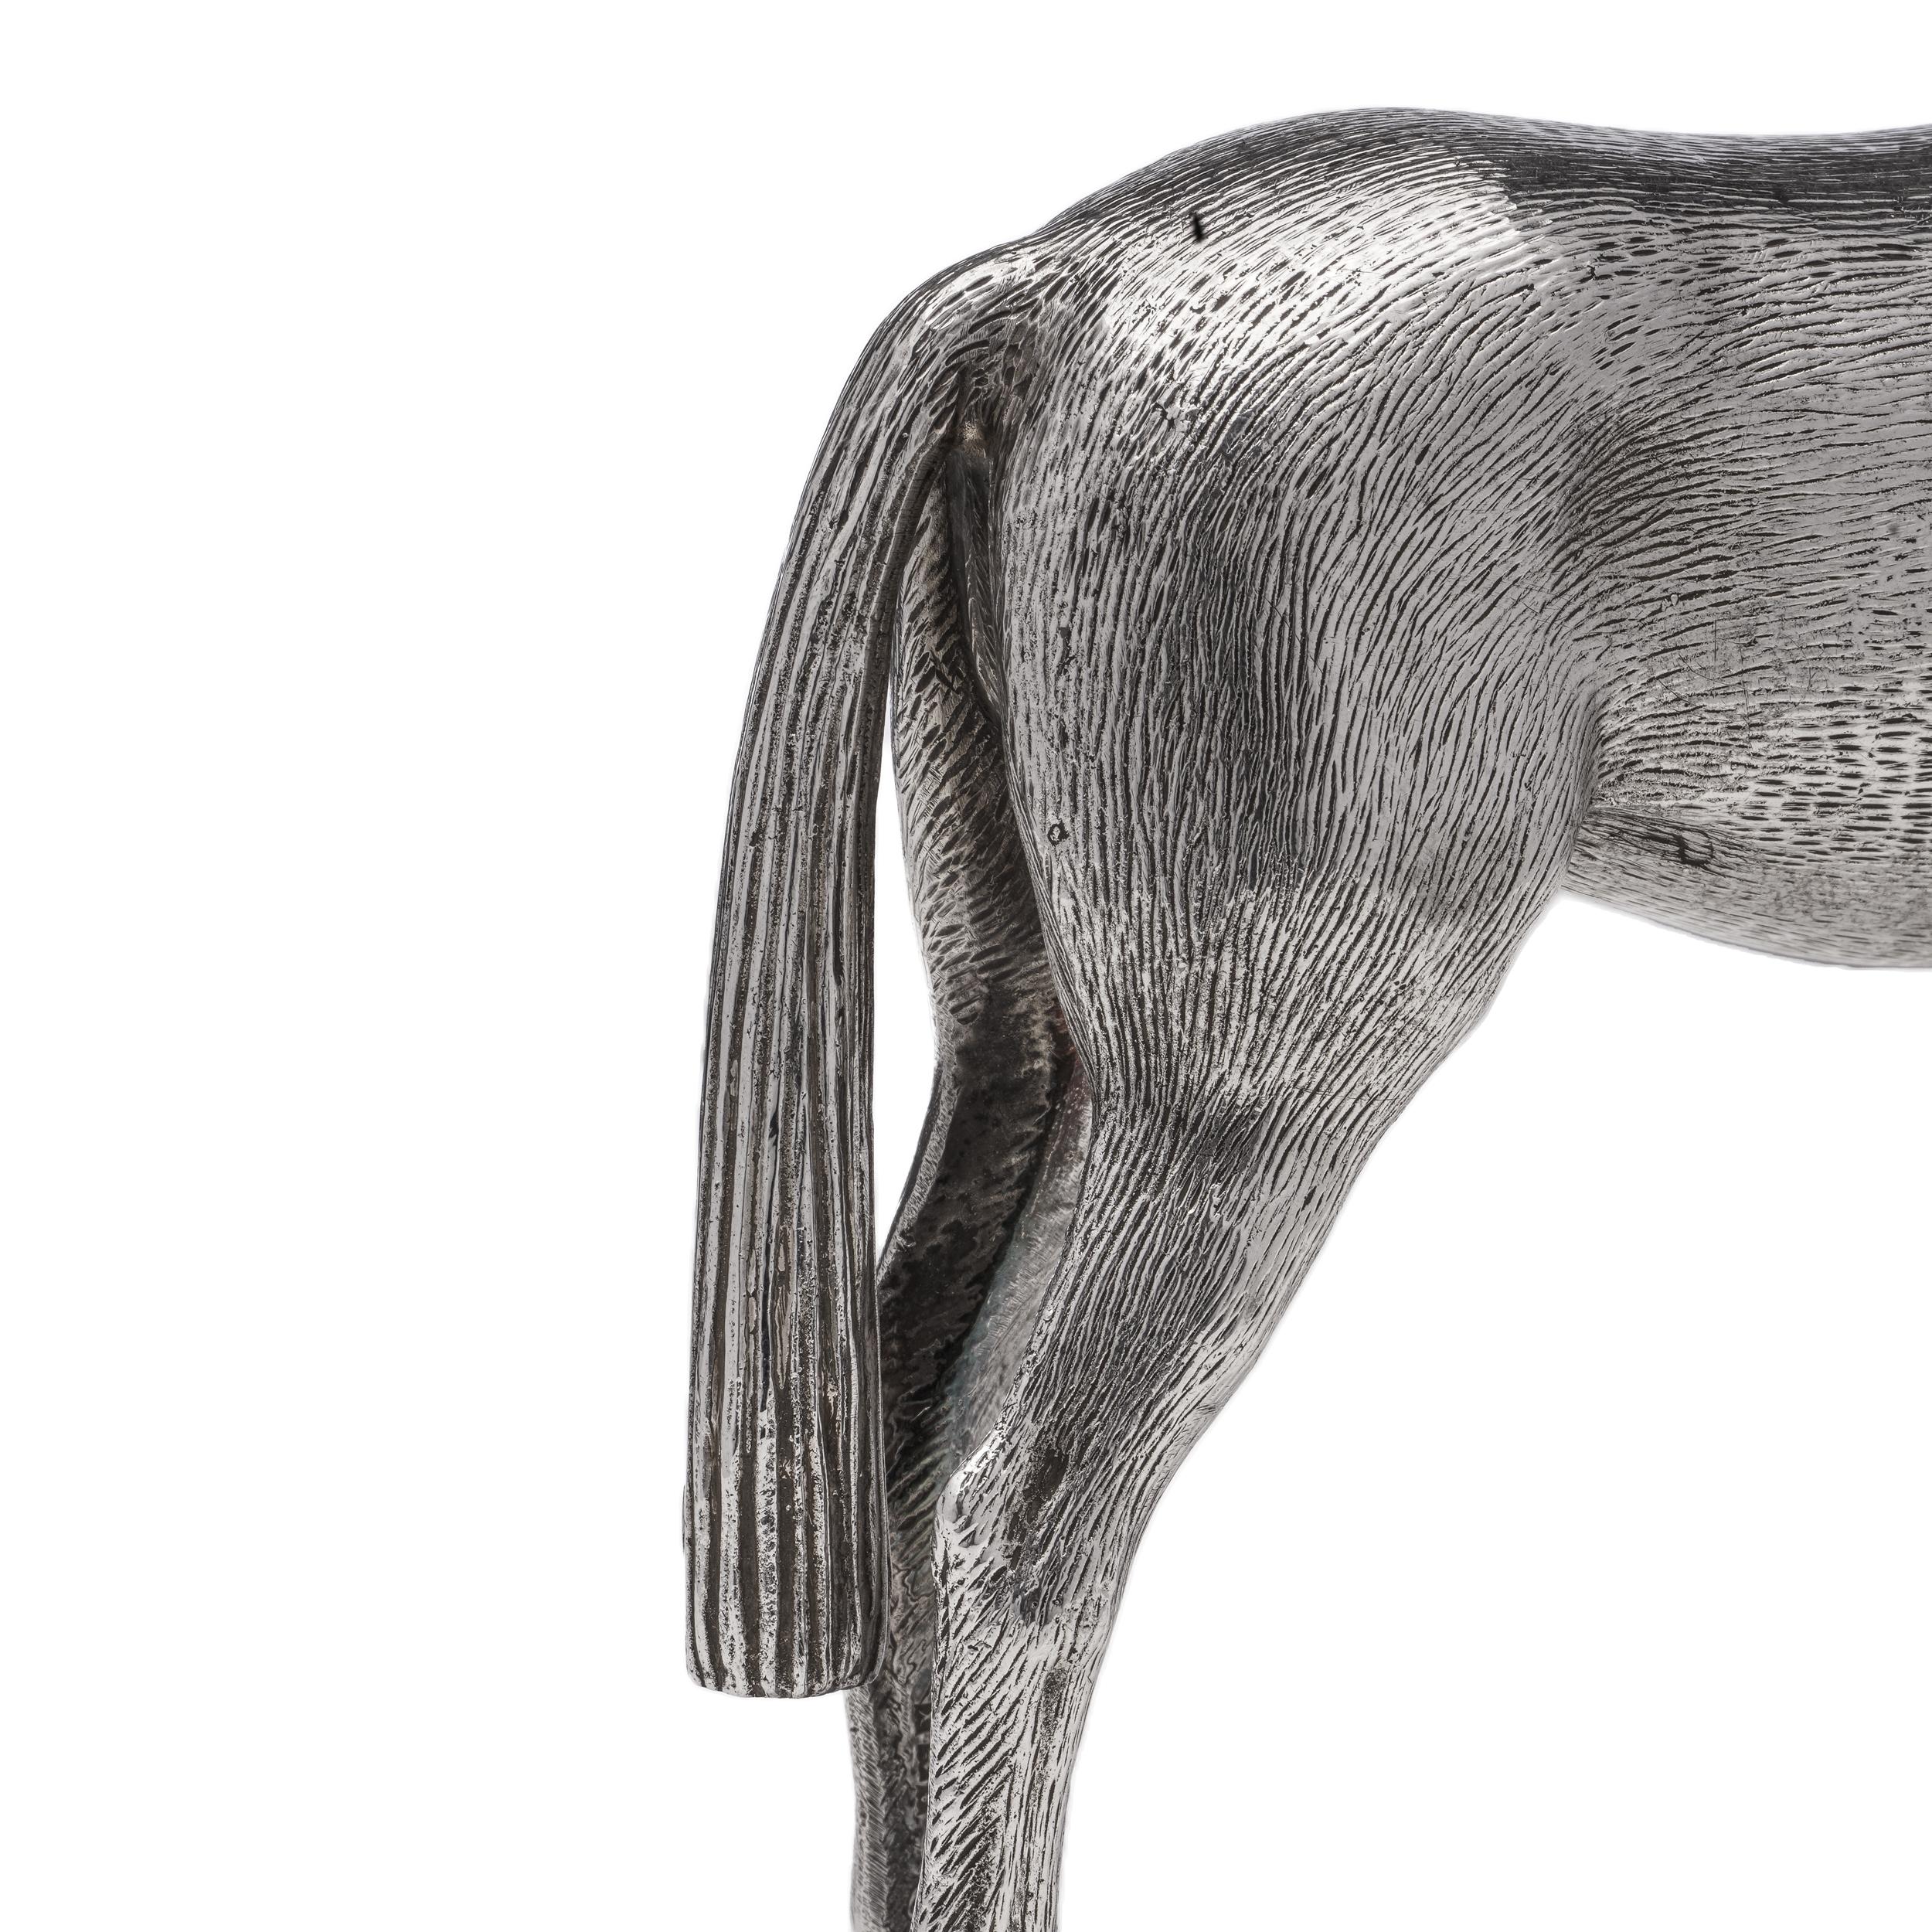  Vintage Sterling Silver Horse Figurine For Sale 3